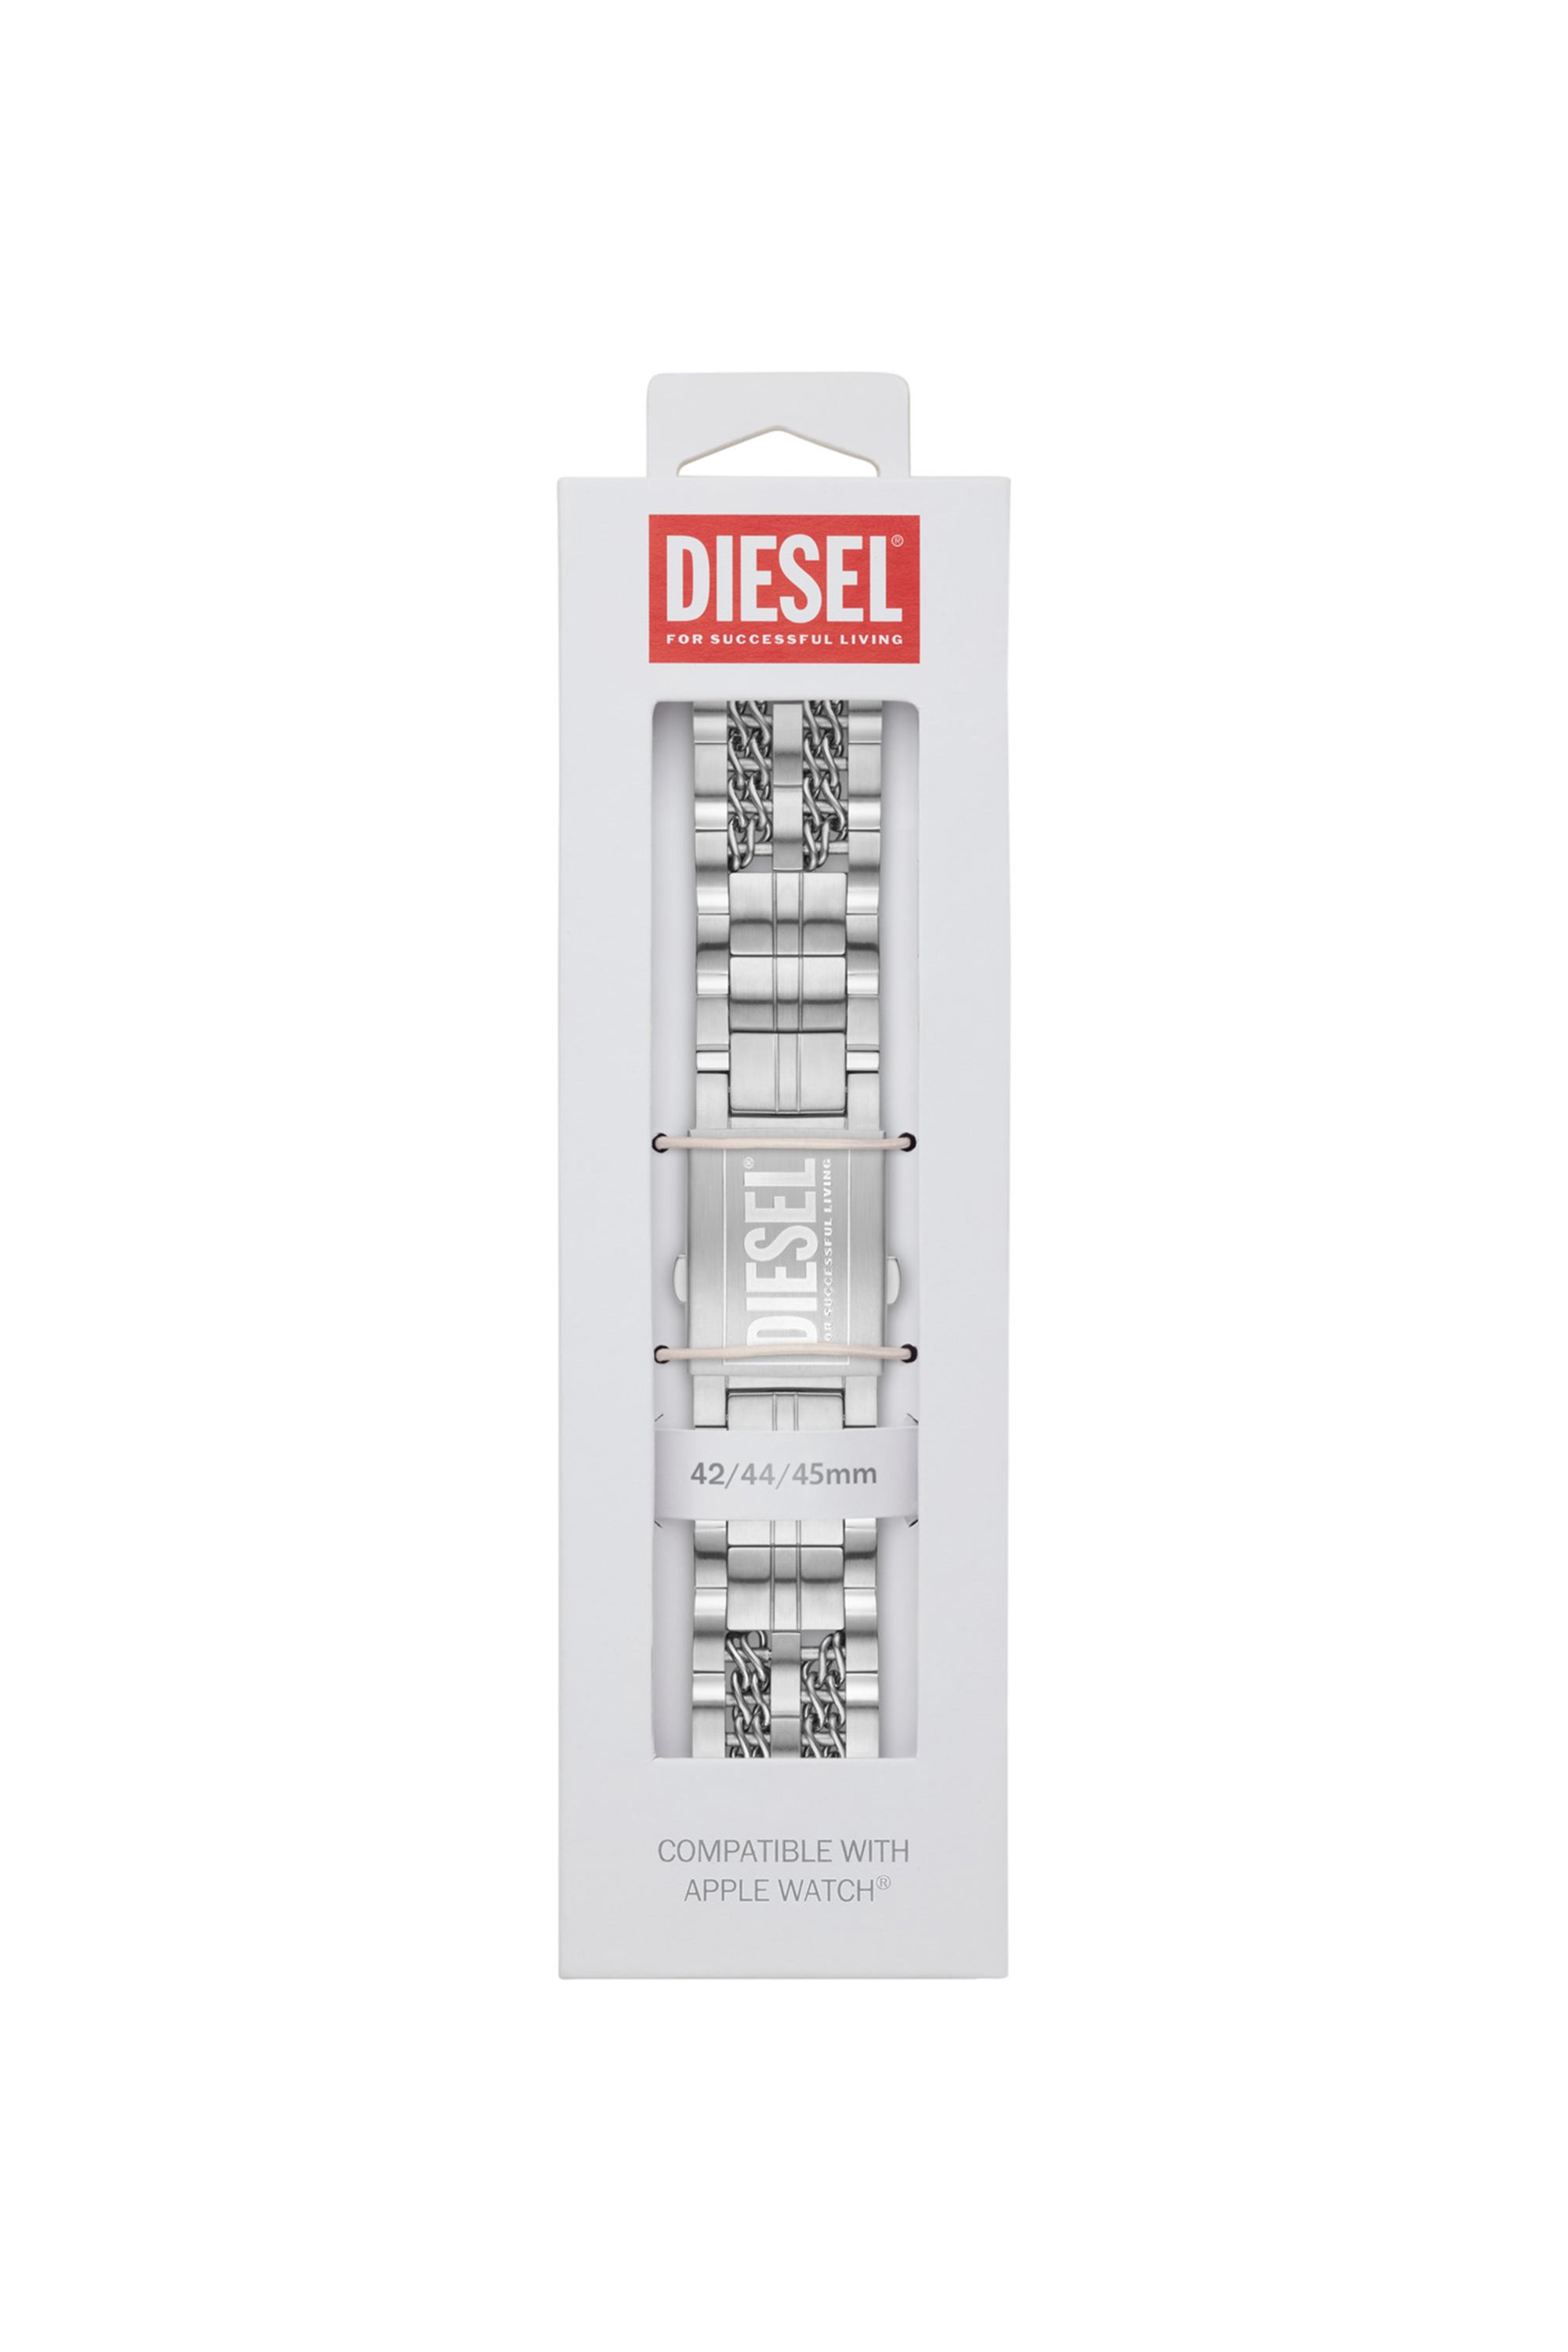 Diesel - DSS008, Grigio - Image 2